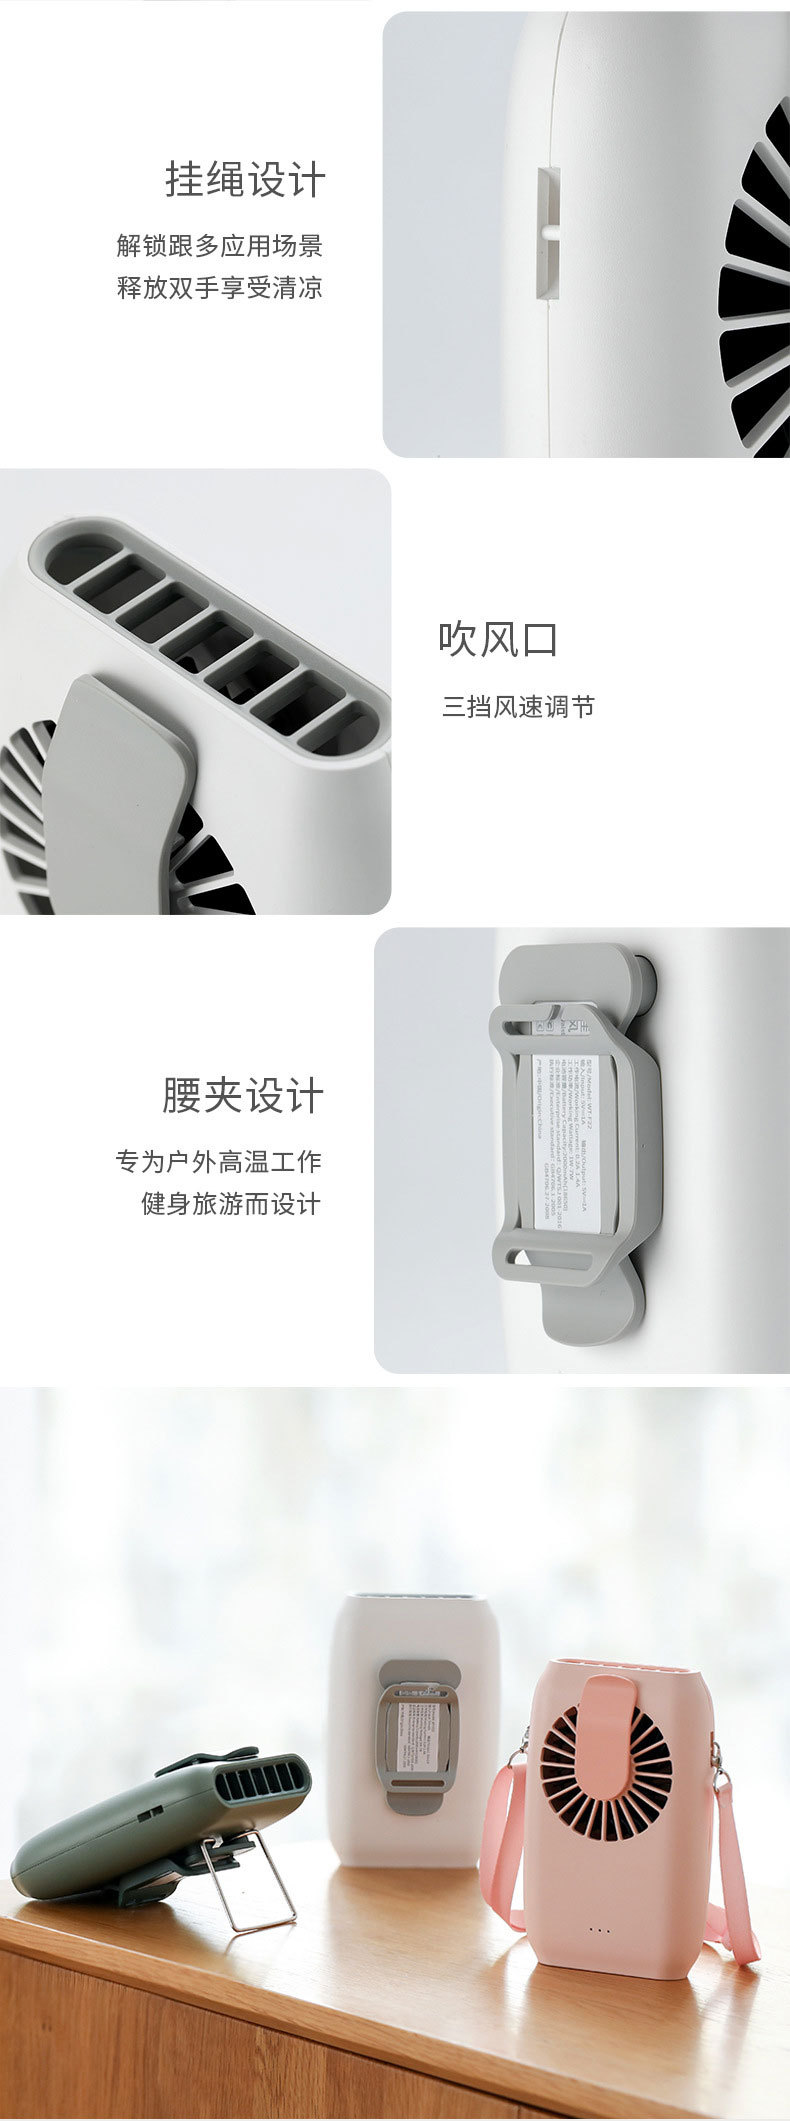 旅行必備USB掛式風扇 手腕小風扇 創意桌面充電式小電扇8